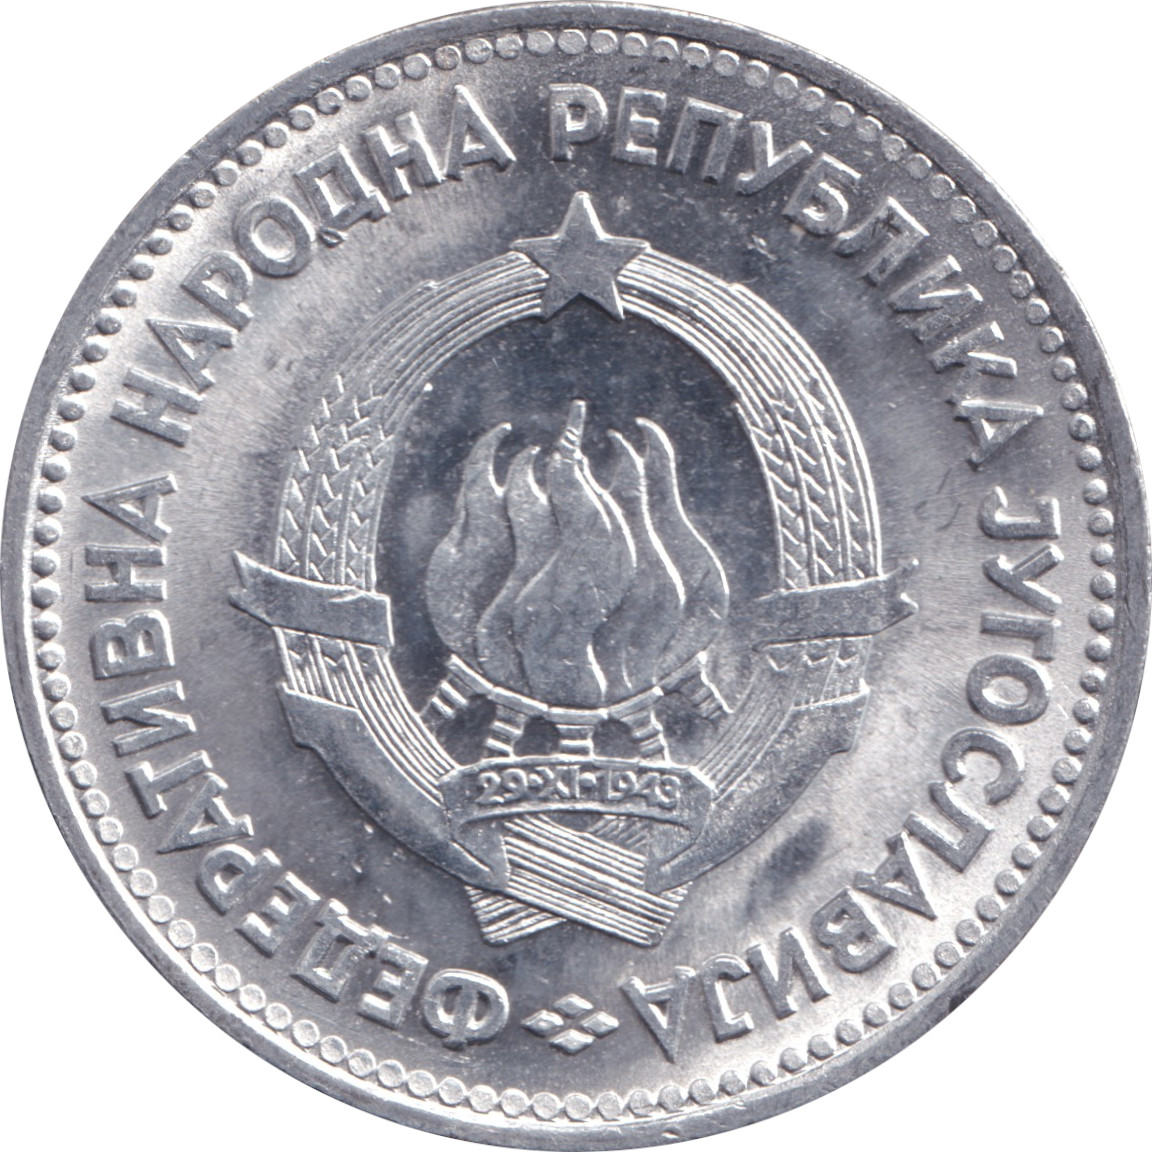 5 dinara - Emblème - Aluminium - République populaire